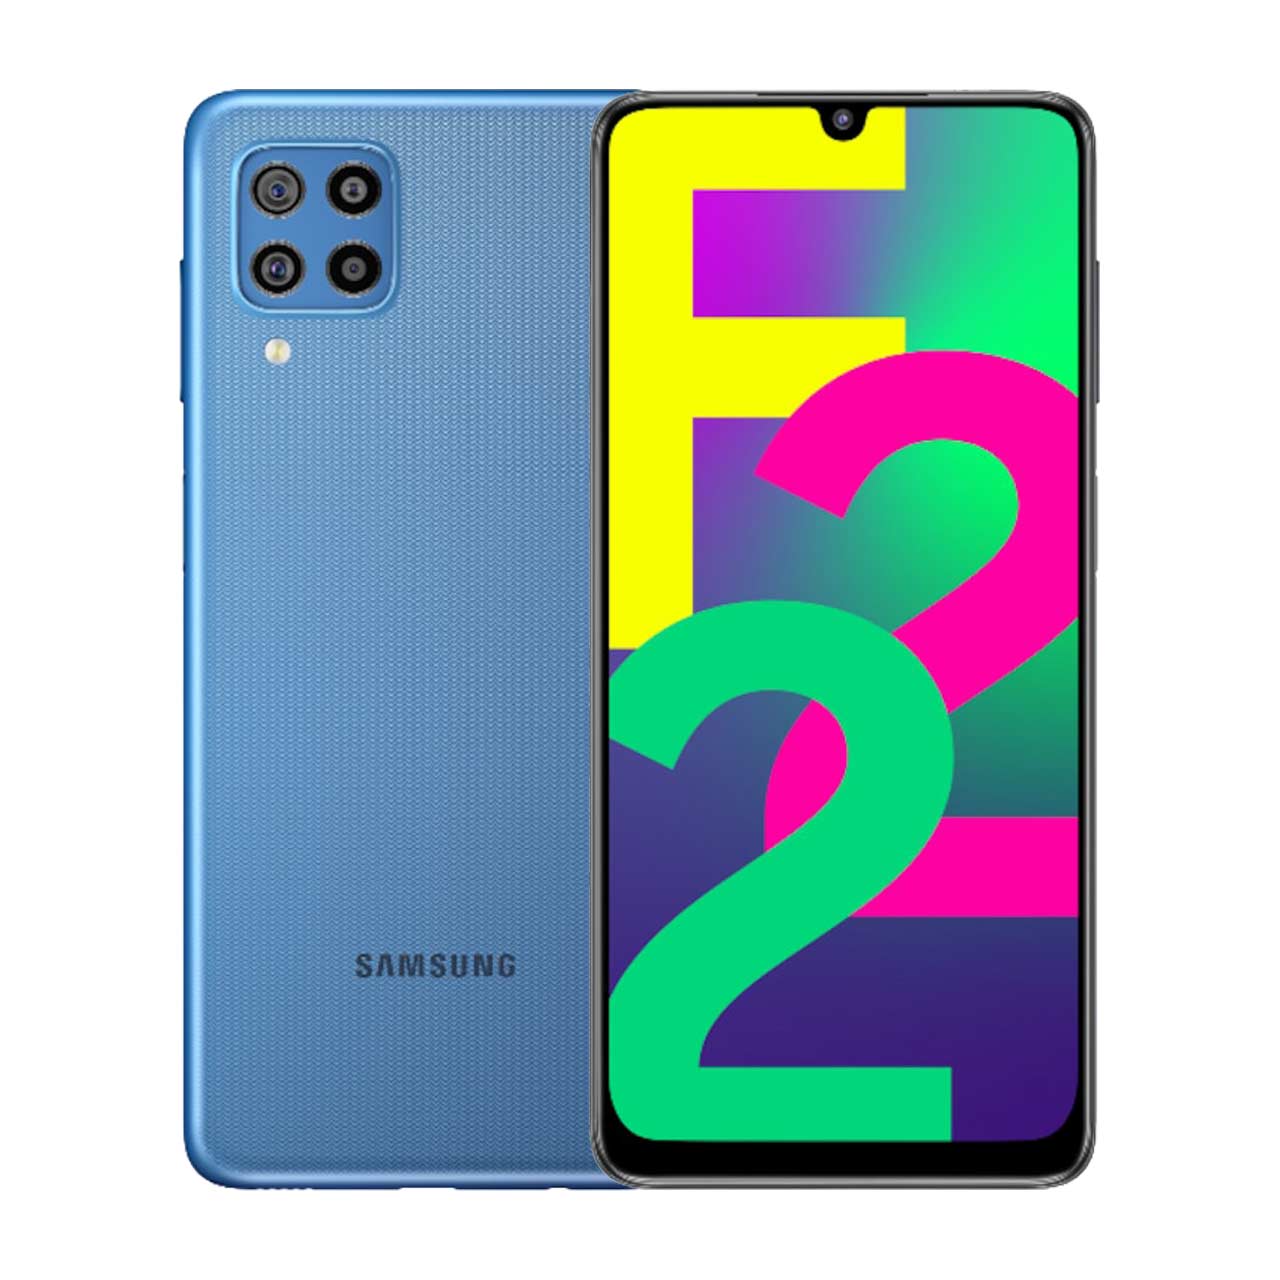  گوشی موبایل سامسونگ مدل Galaxy F22 (RAM 4) ظرفیت 64GB - آبی     